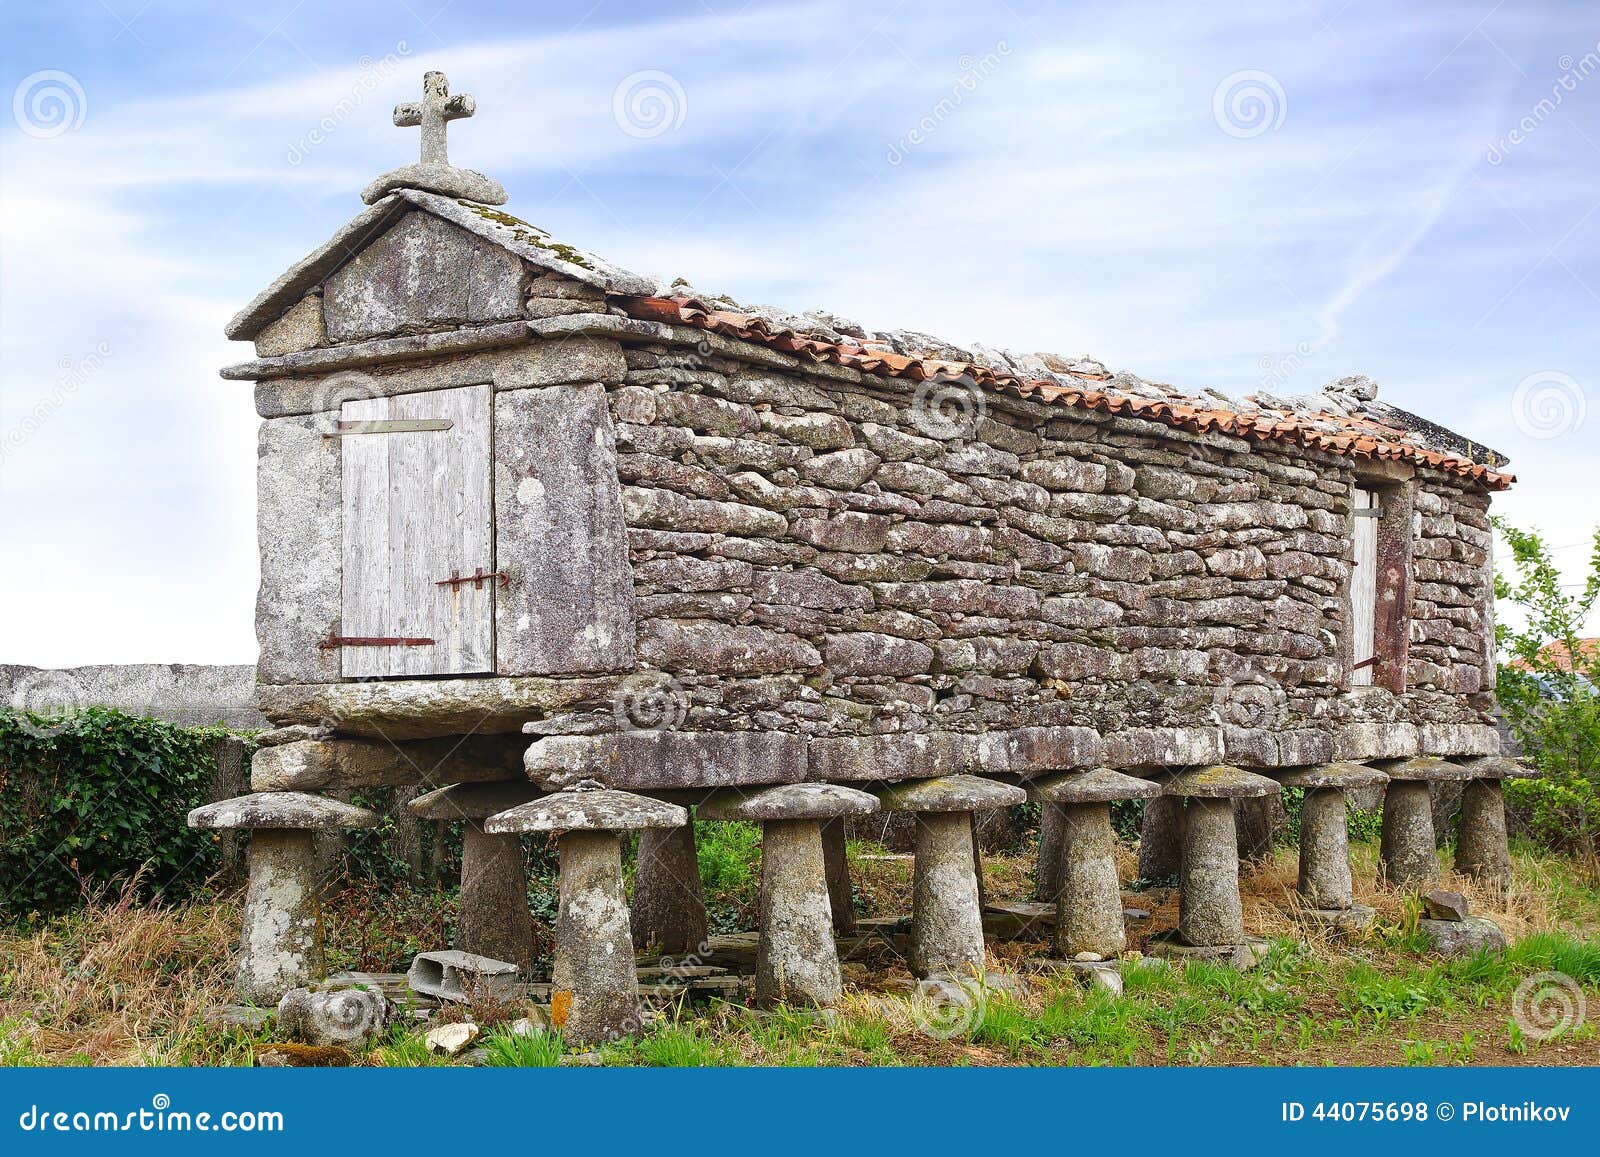 the ancient horreo (granary). galicia, spain